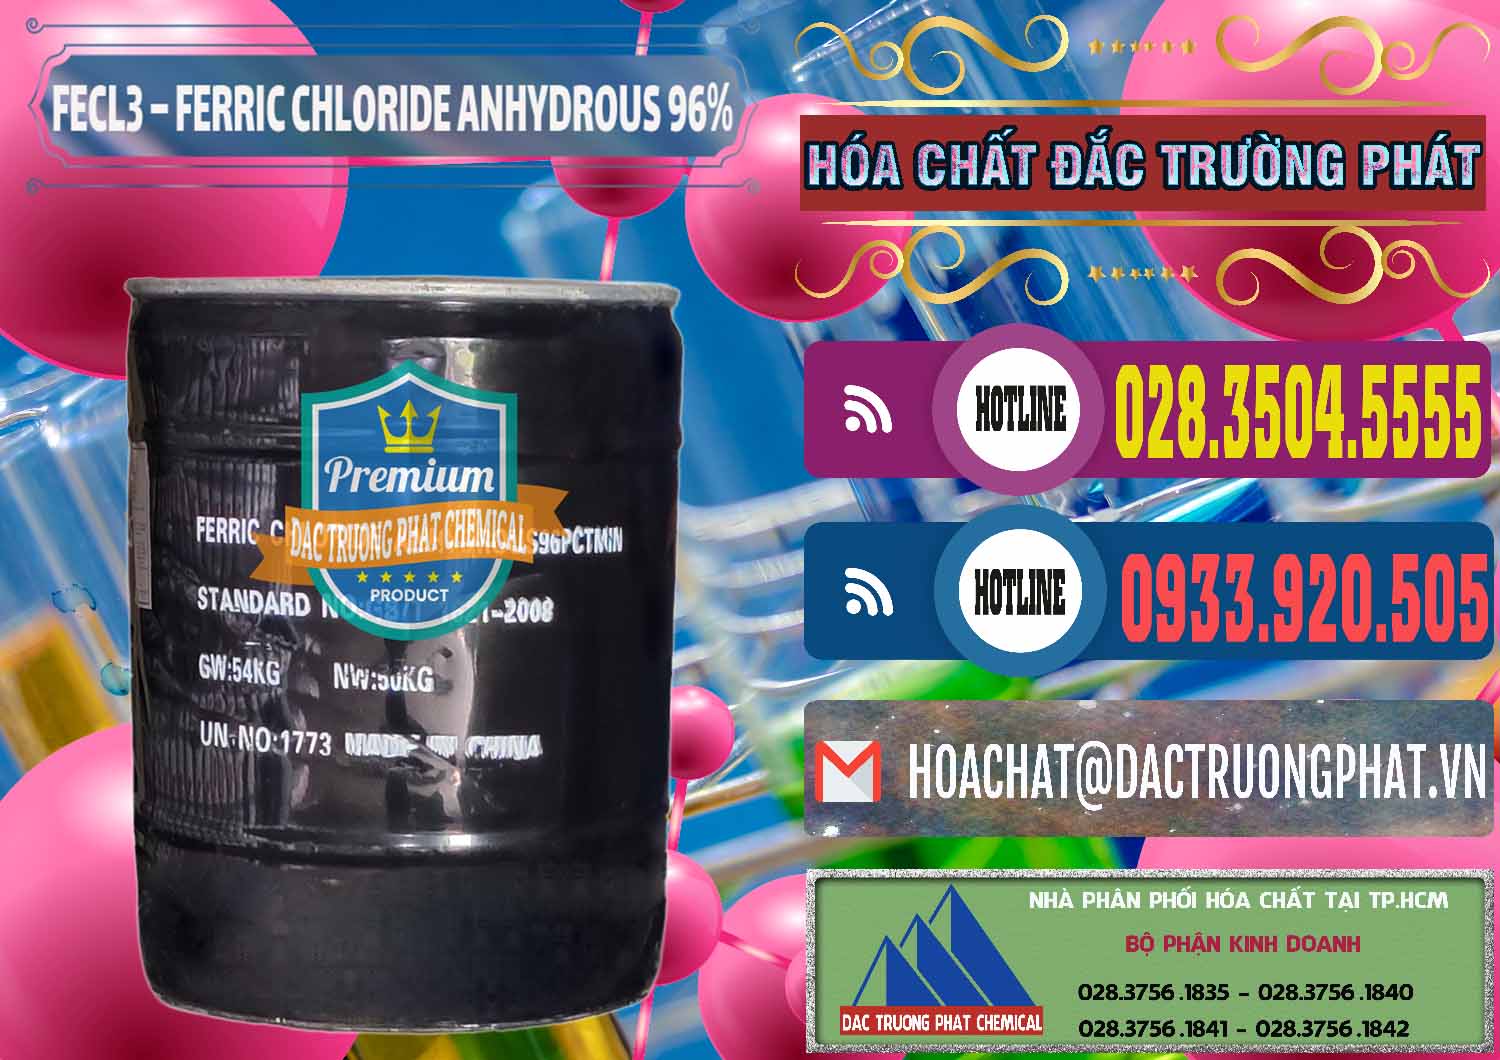 Cty chuyên cung ứng ( bán ) FECL3 – Ferric Chloride Anhydrous 96% Trung Quốc China - 0065 - Nhà cung cấp và phân phối hóa chất tại TP.HCM - muabanhoachat.com.vn